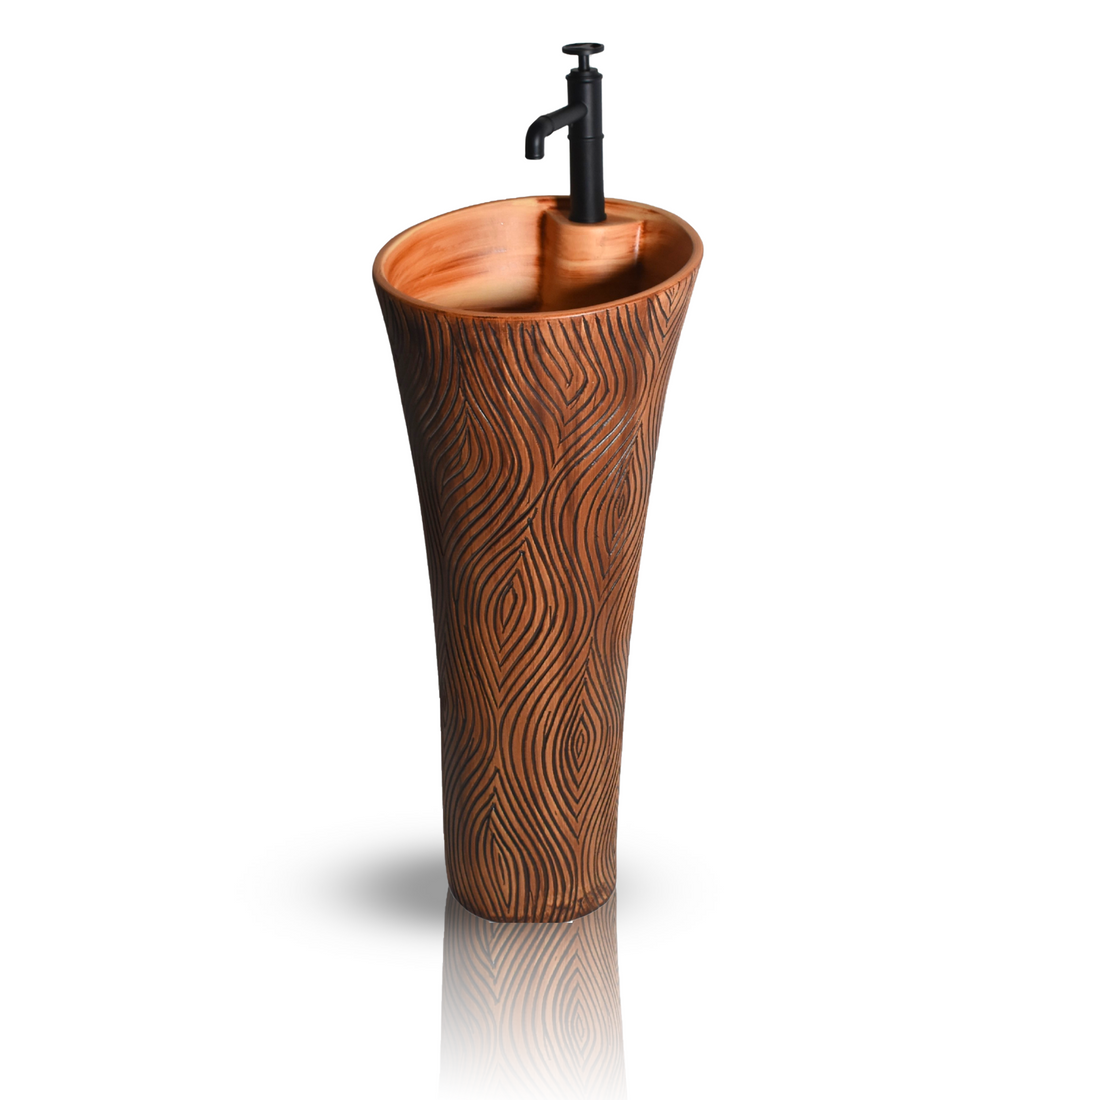 InArt Ceramic Pedestal Free Standing Round Wash Basin Wooden 38x38 CM - InArt-Studio